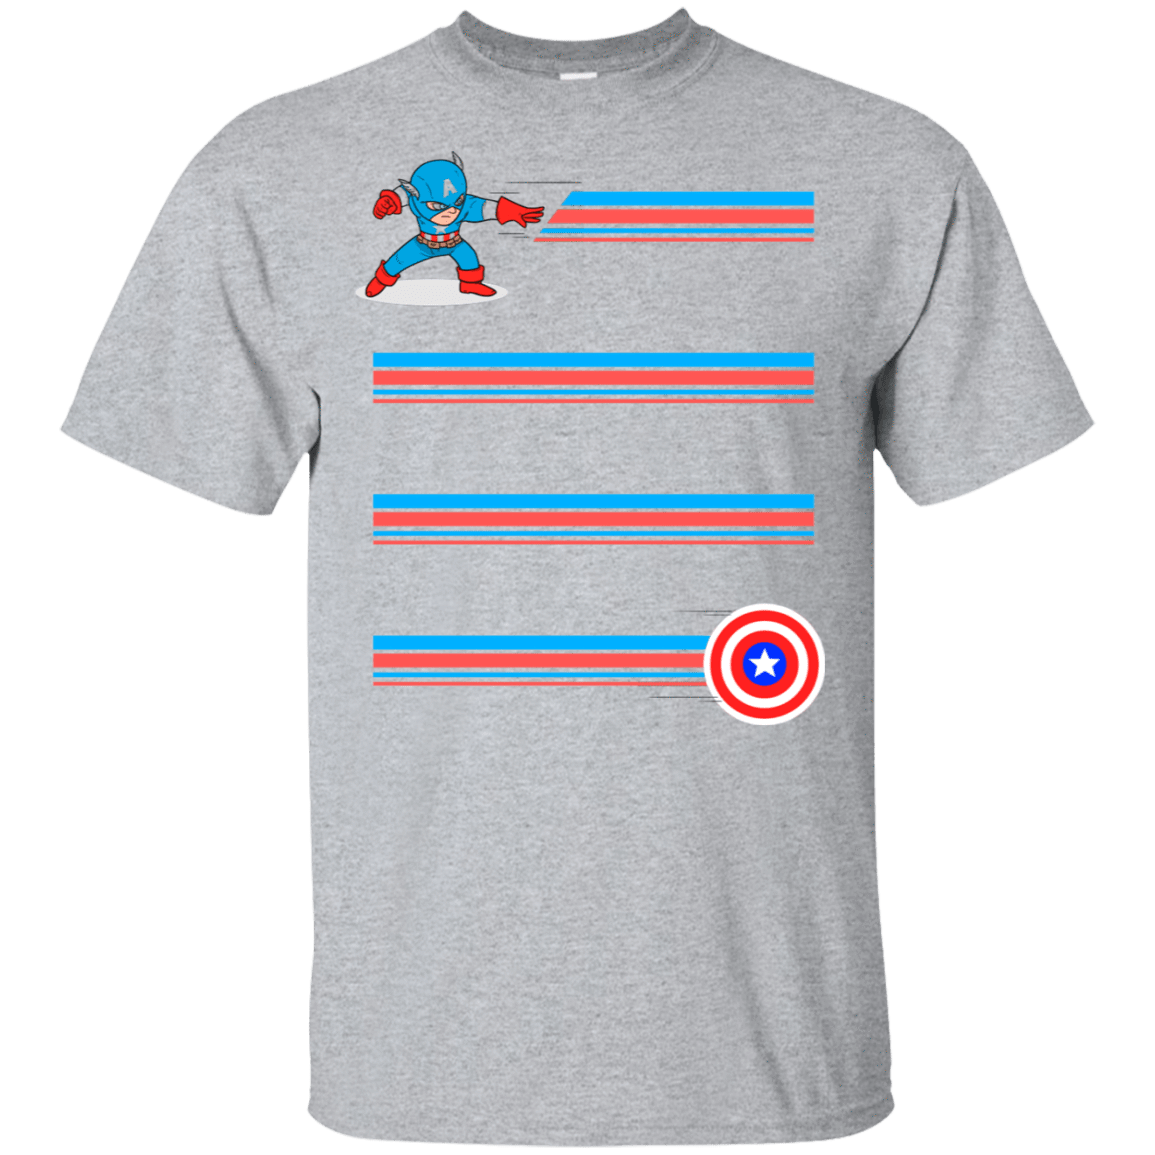 T-Shirts Sport Grey / S Line Captain T-Shirt